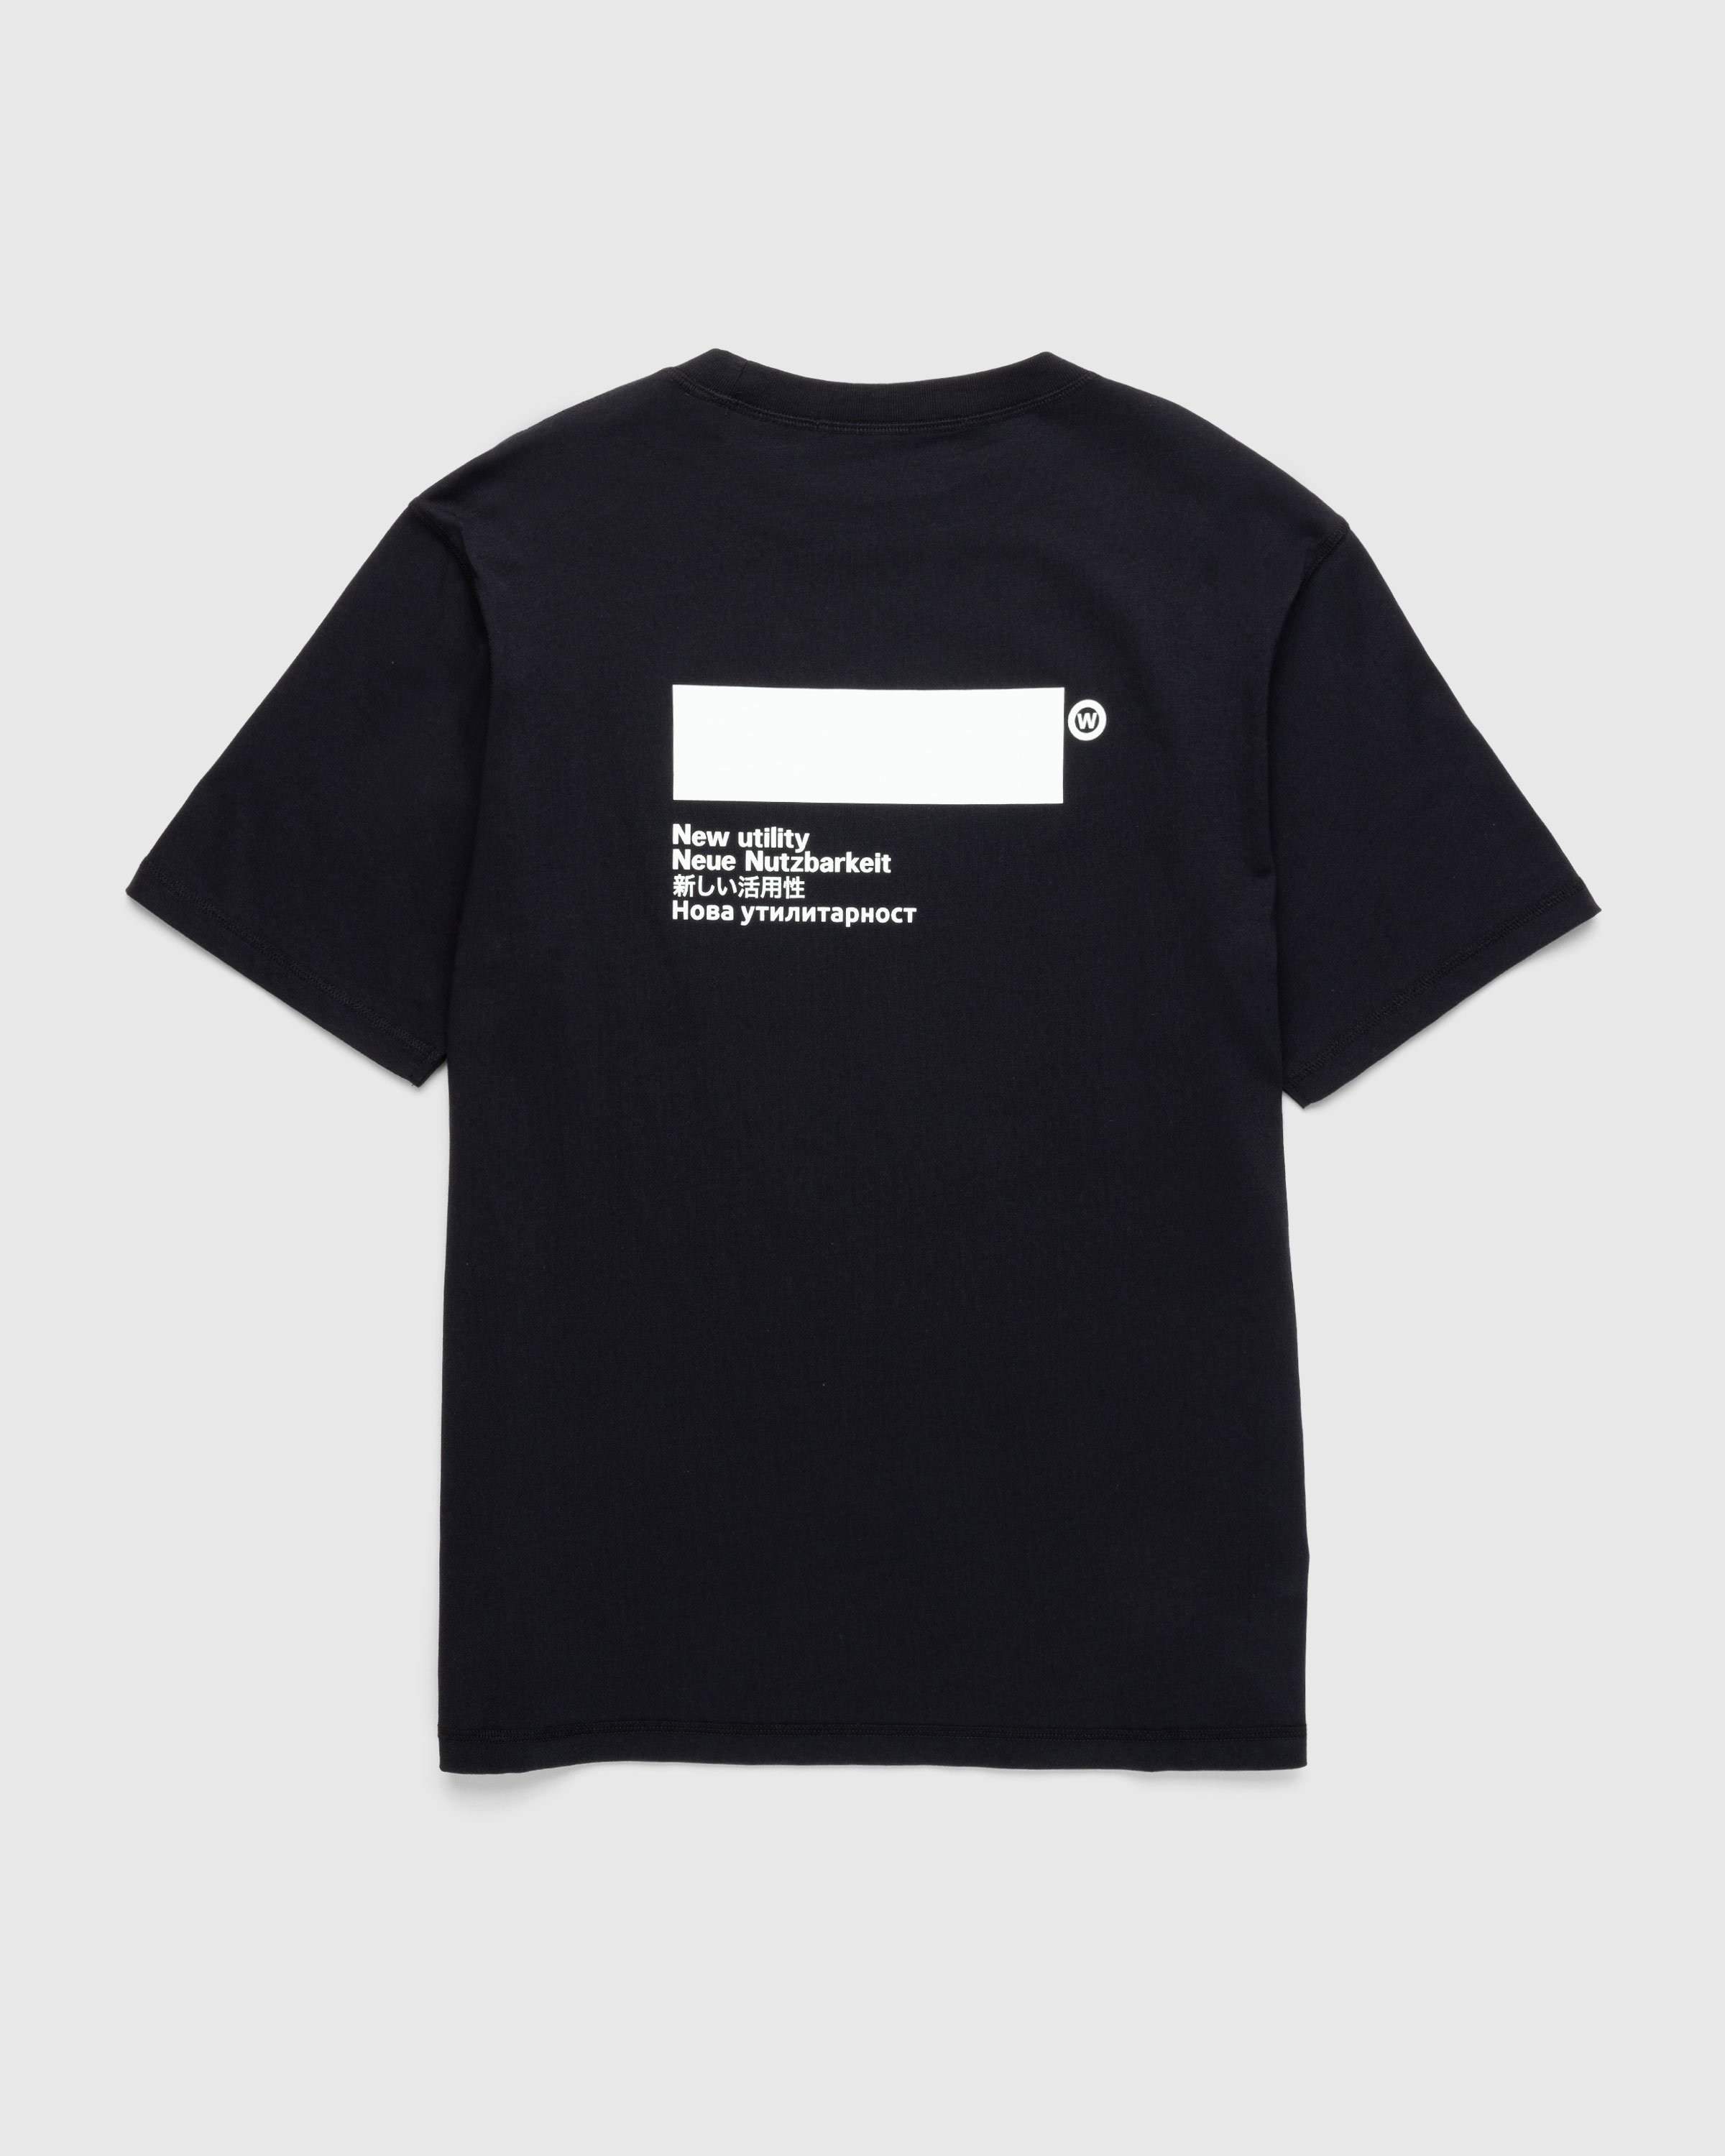 AFFXWRKS - Standardized T-Shirt Deep Black - Clothing - Black - Image 1